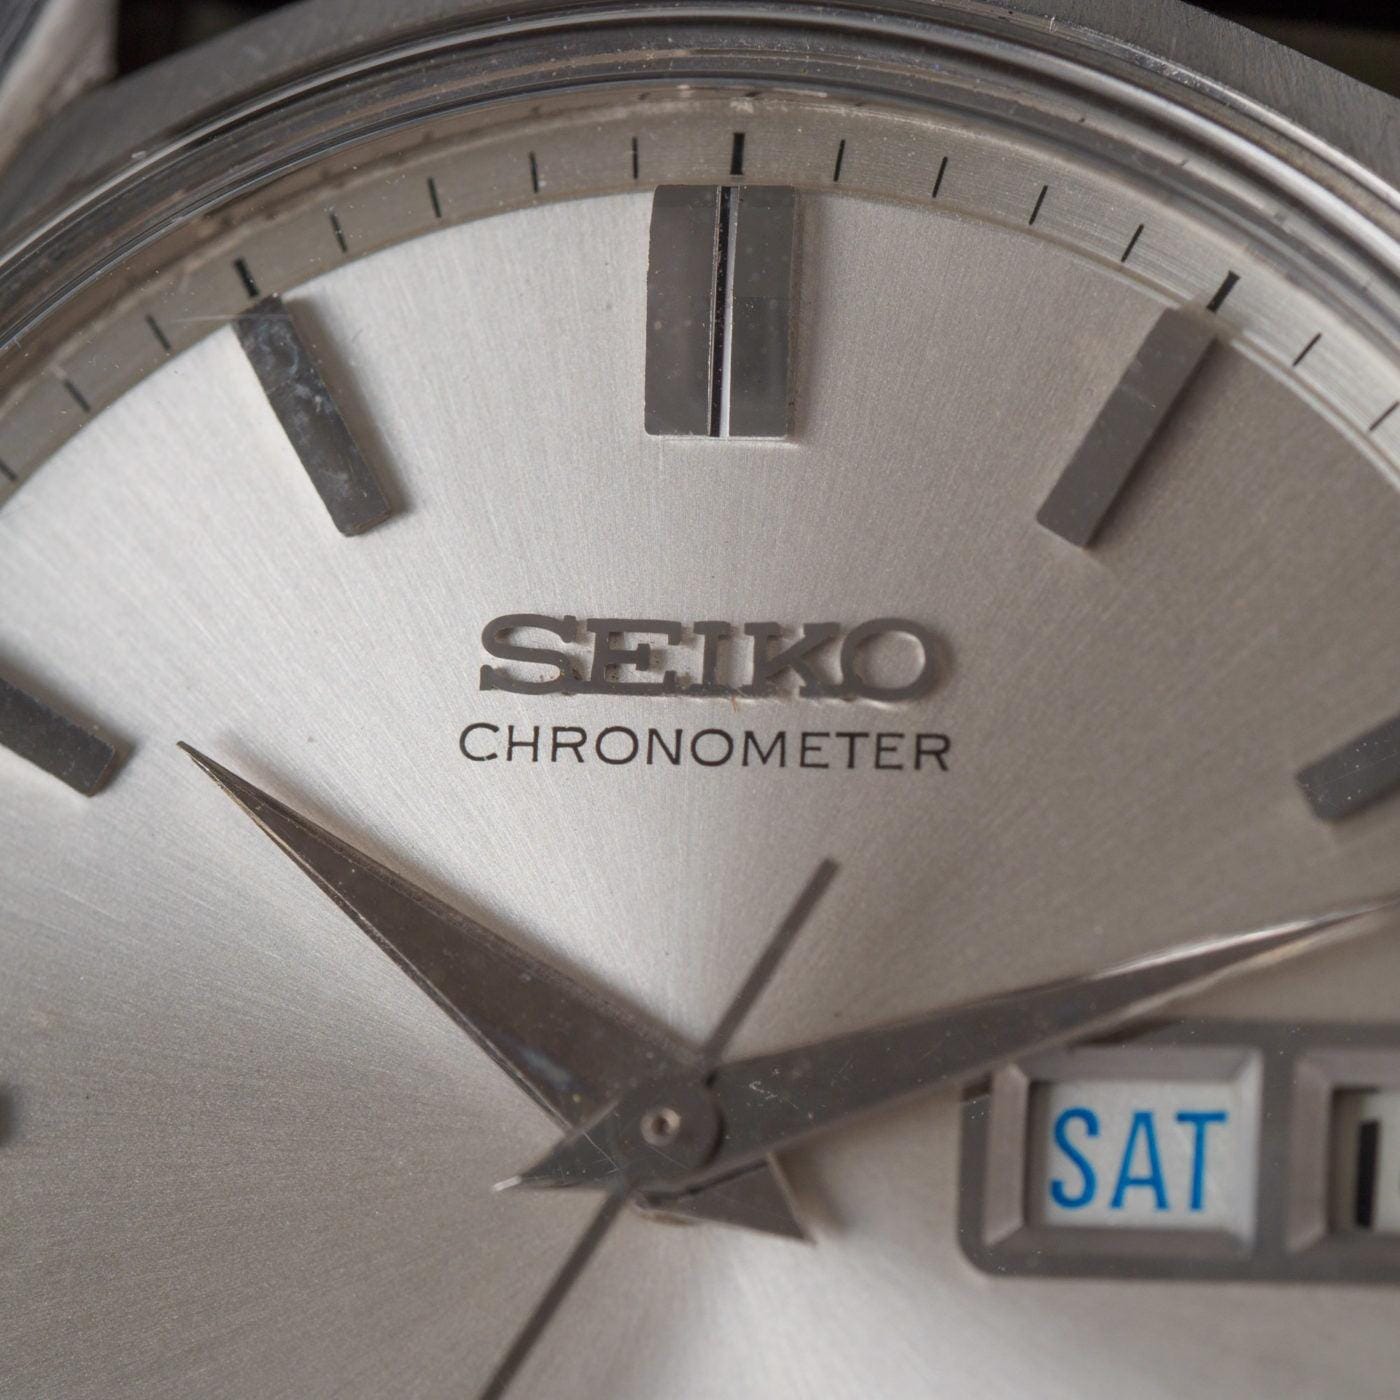 SEIKOMATIC Chronometer 6246-9000 - Arbitro